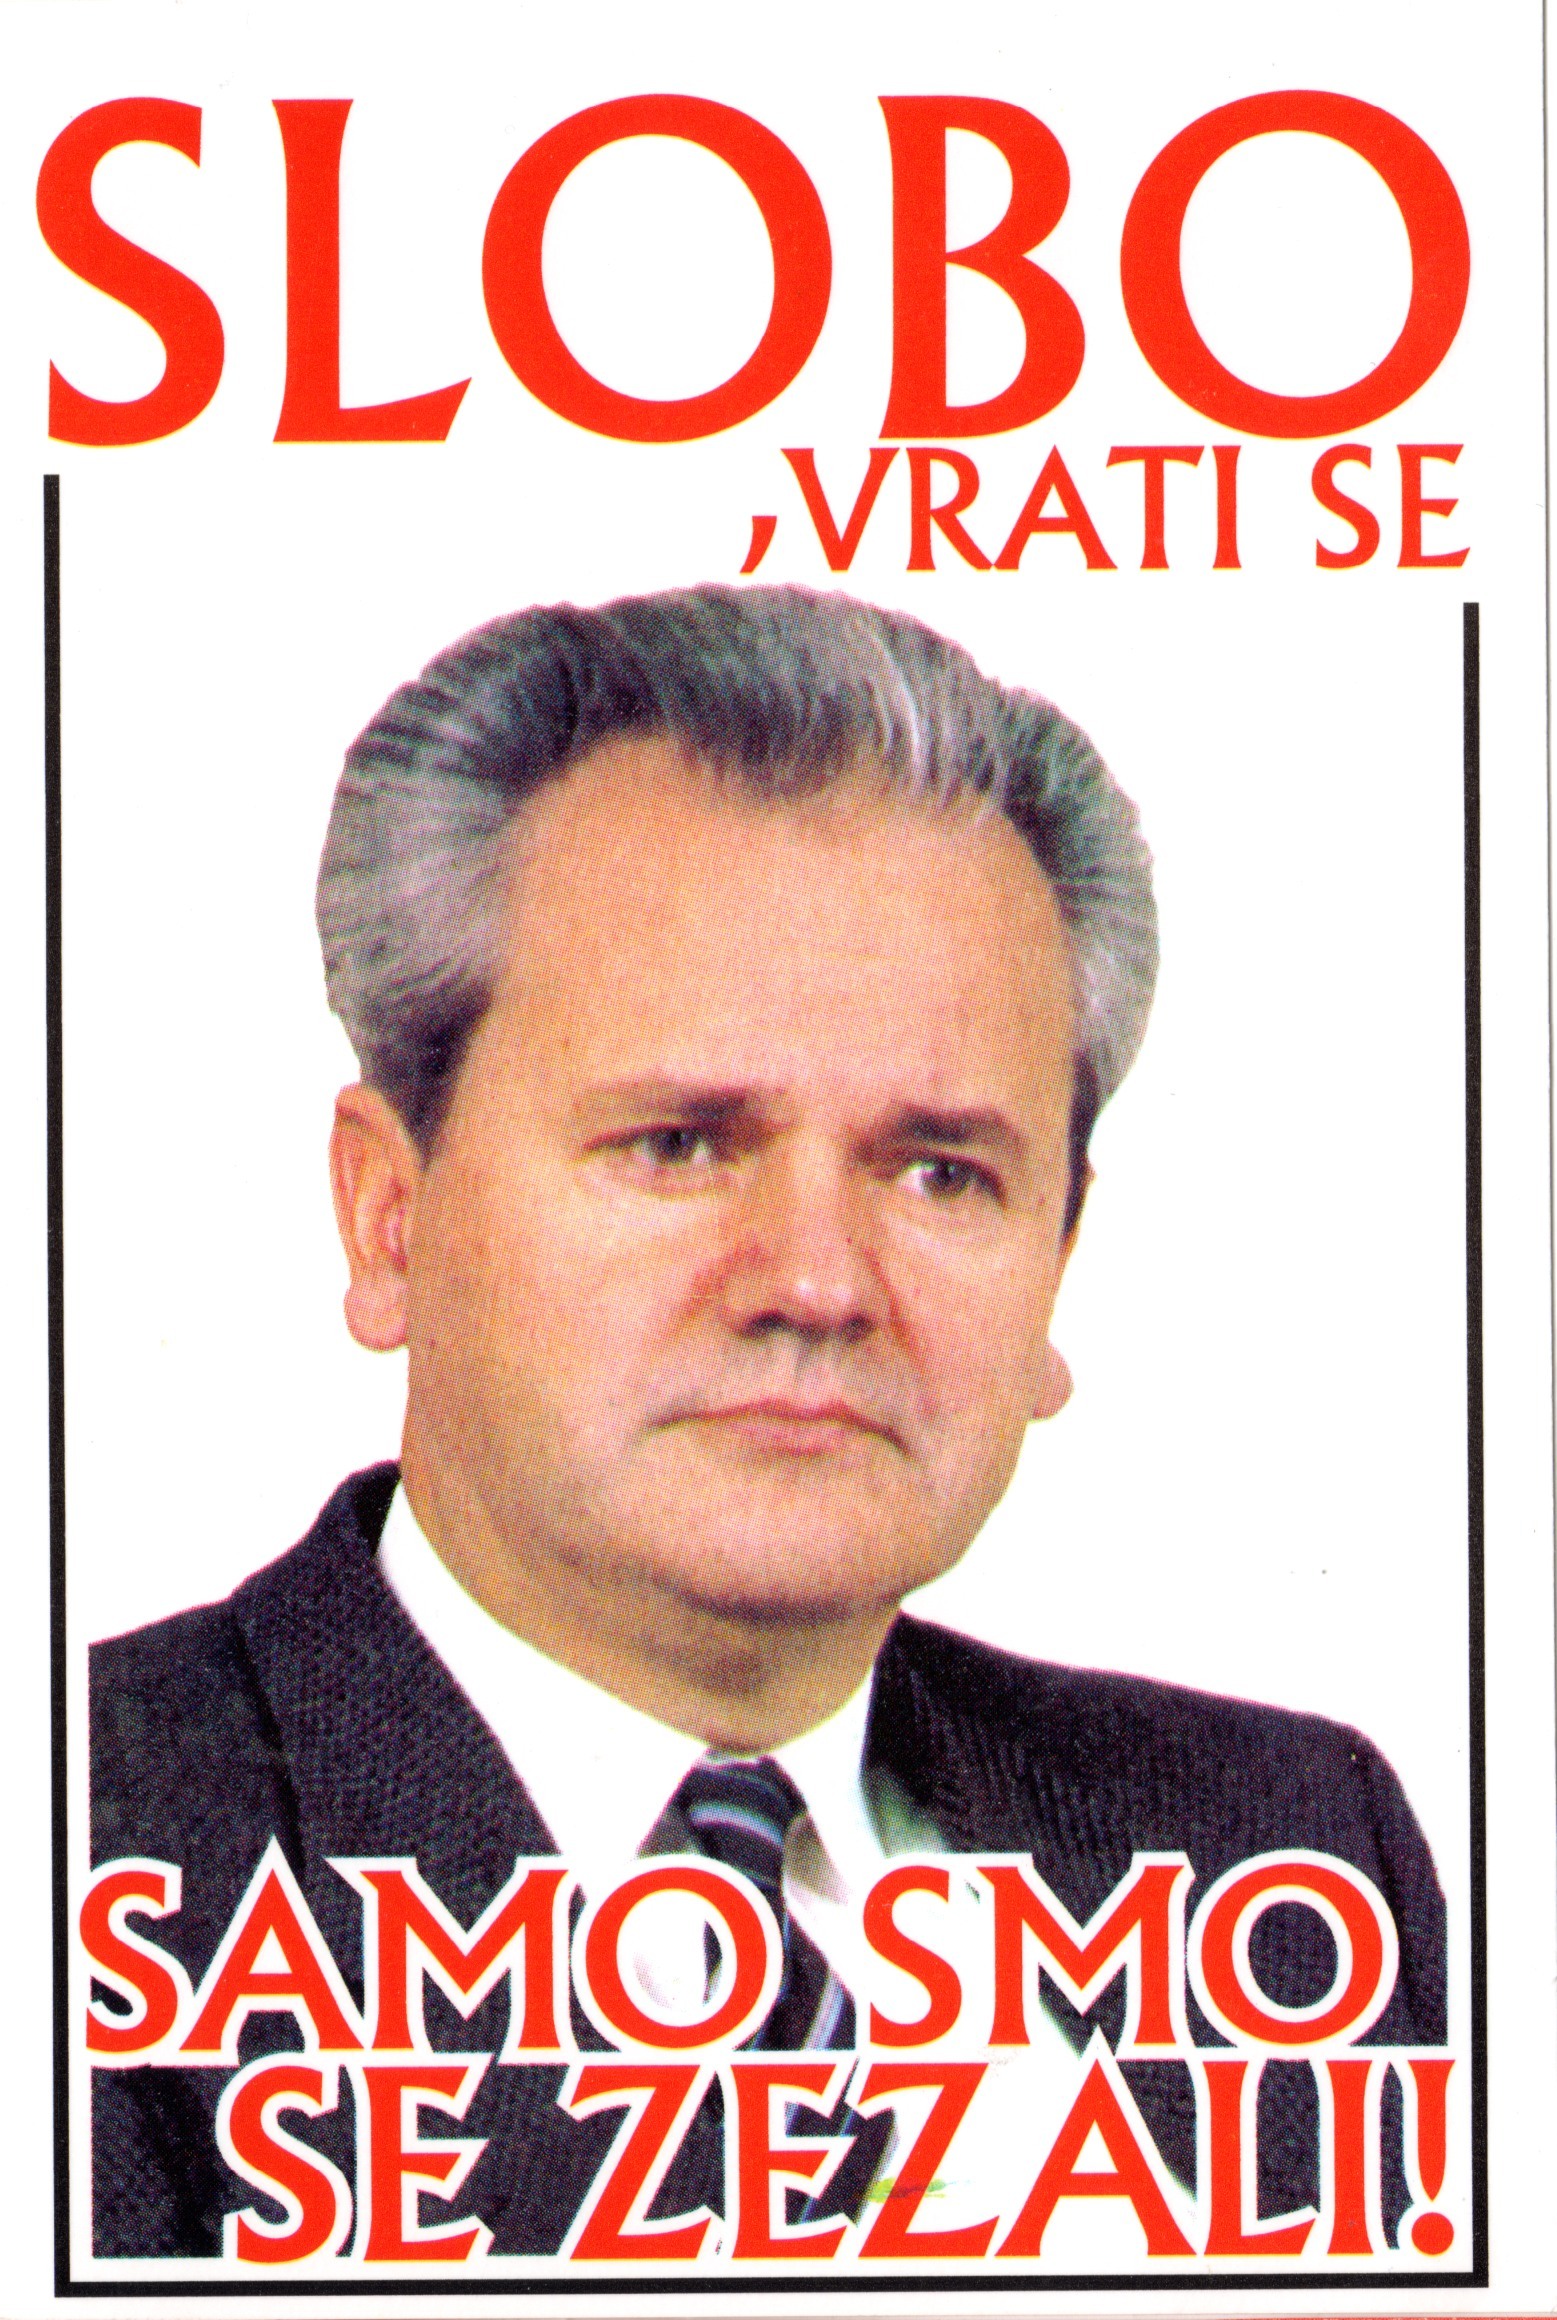 Biografii comentate (XXXIII). Miloşevici, „diavolul cu faţă de bebeluş”/ de Călin Hentea